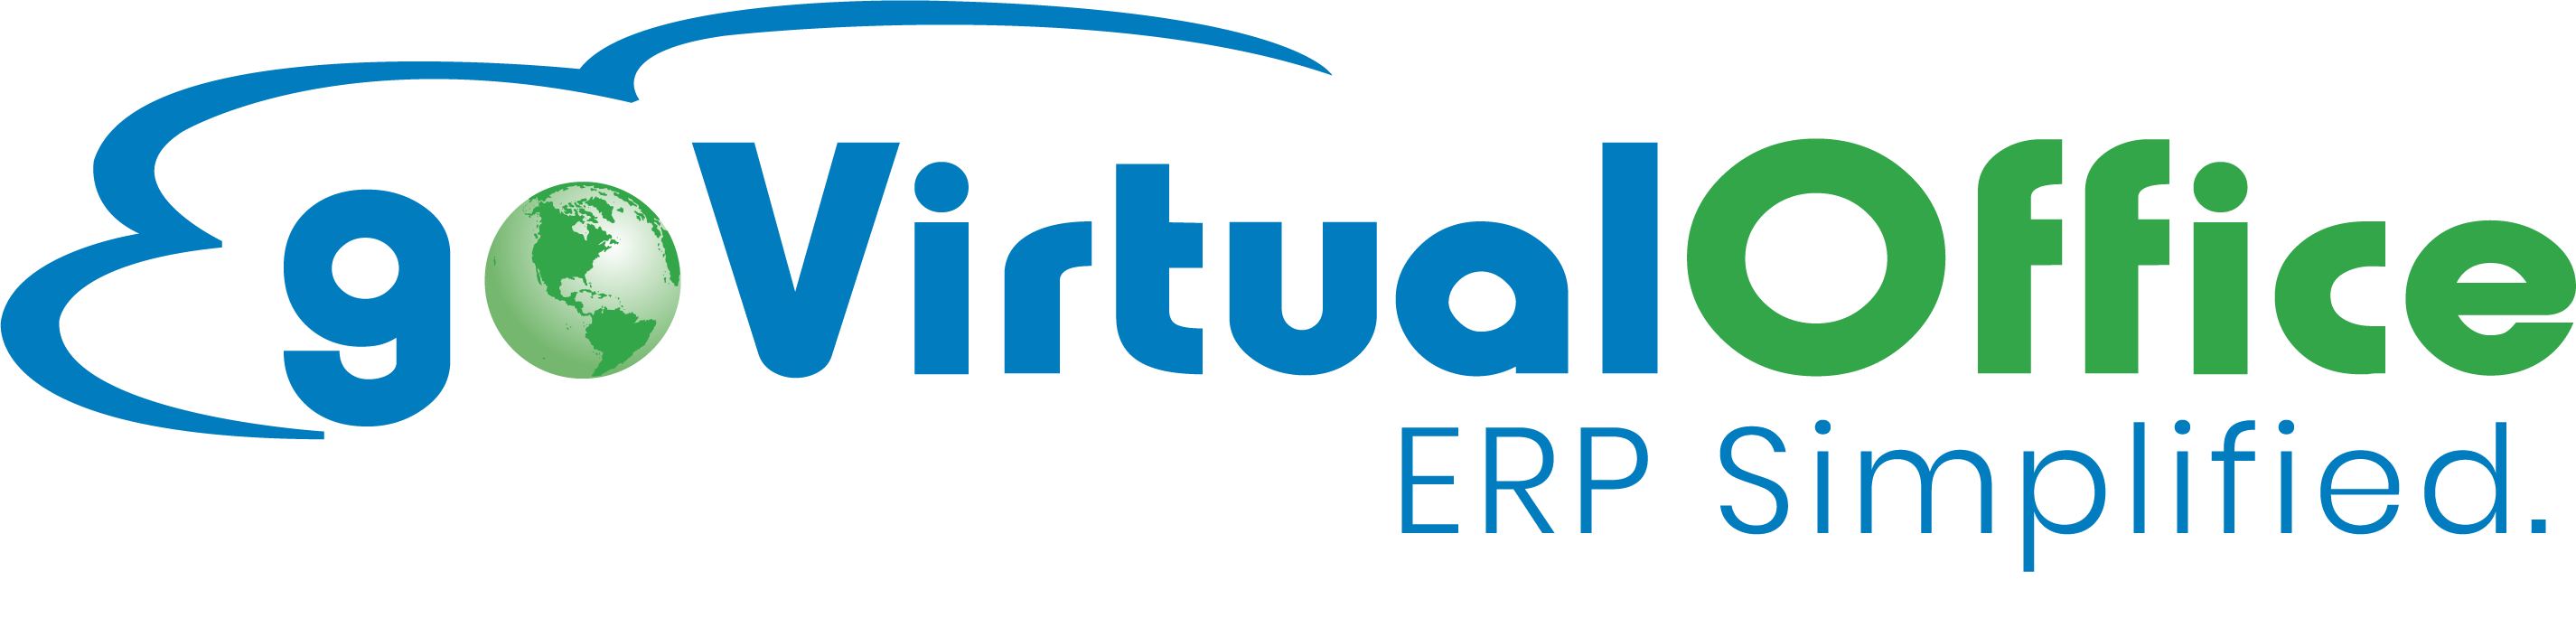 goVirtualOffice Company Logo